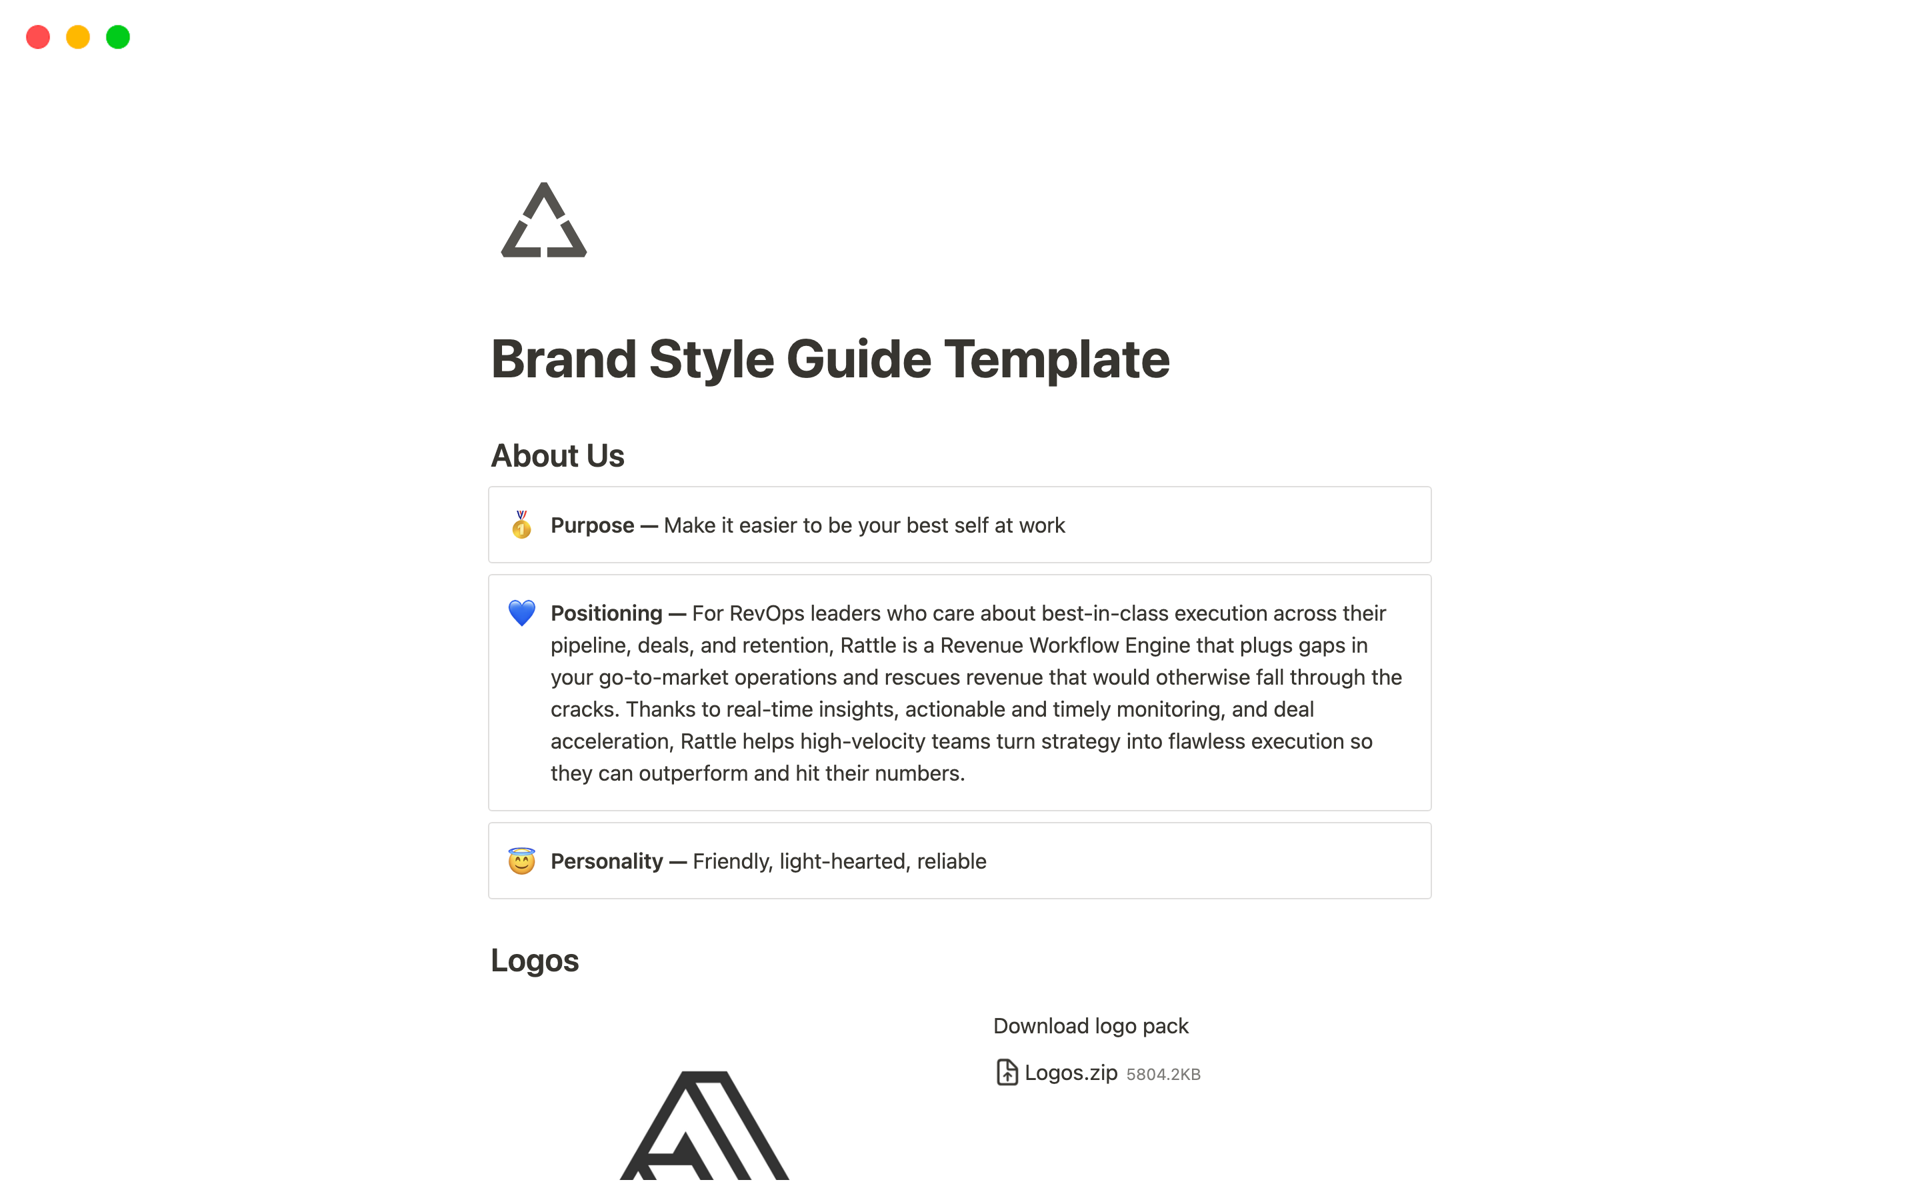 Vista previa de una plantilla para Brand Style Guide